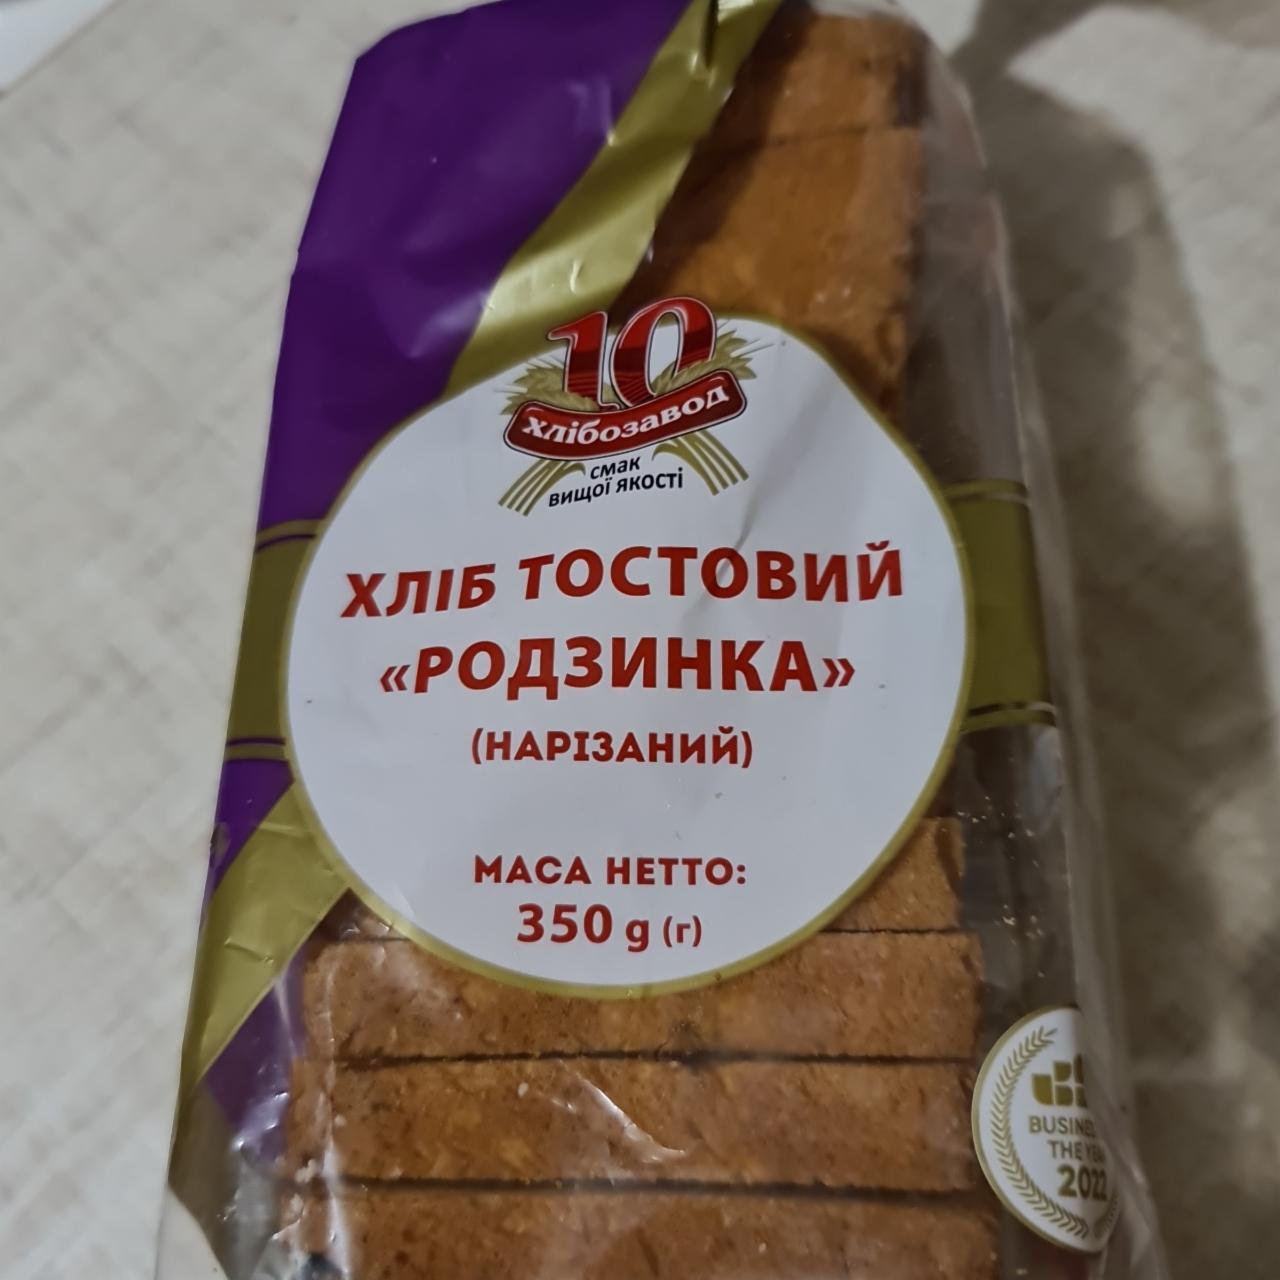 Фото - Хлеб тостовый родзинка нарезанный 10 хлібозавод